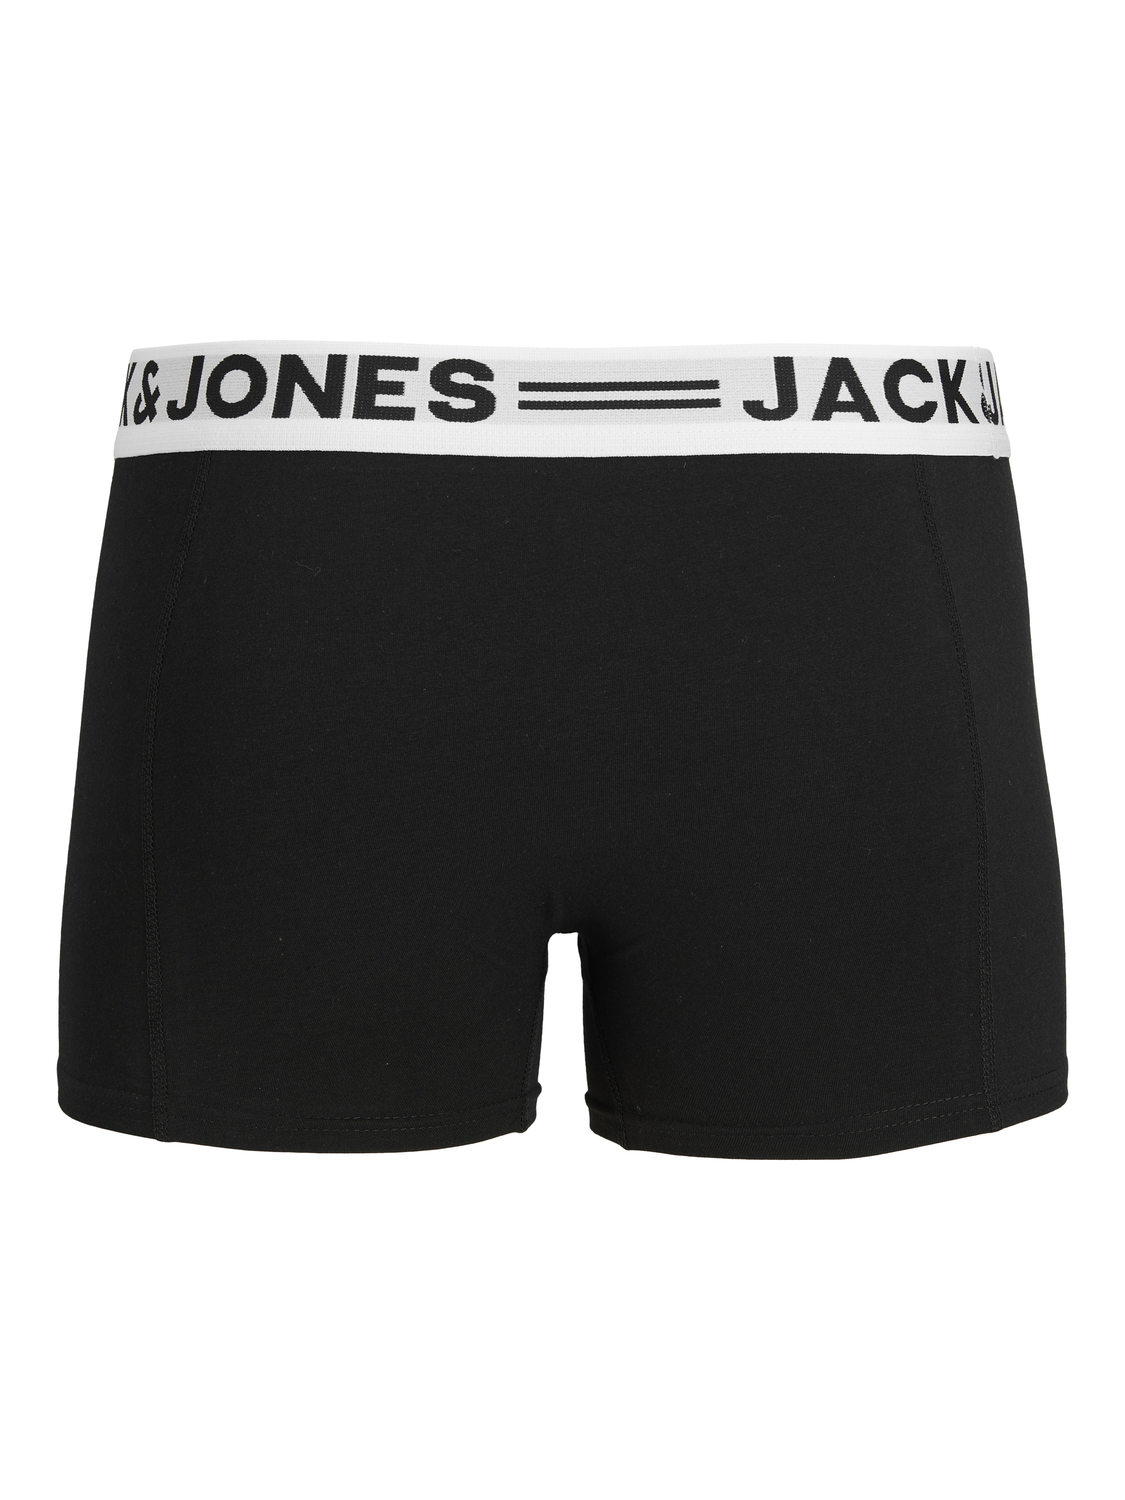 Jack & Jones 3-συσκευασία Κοντό παντελόνι -Black - 12081832